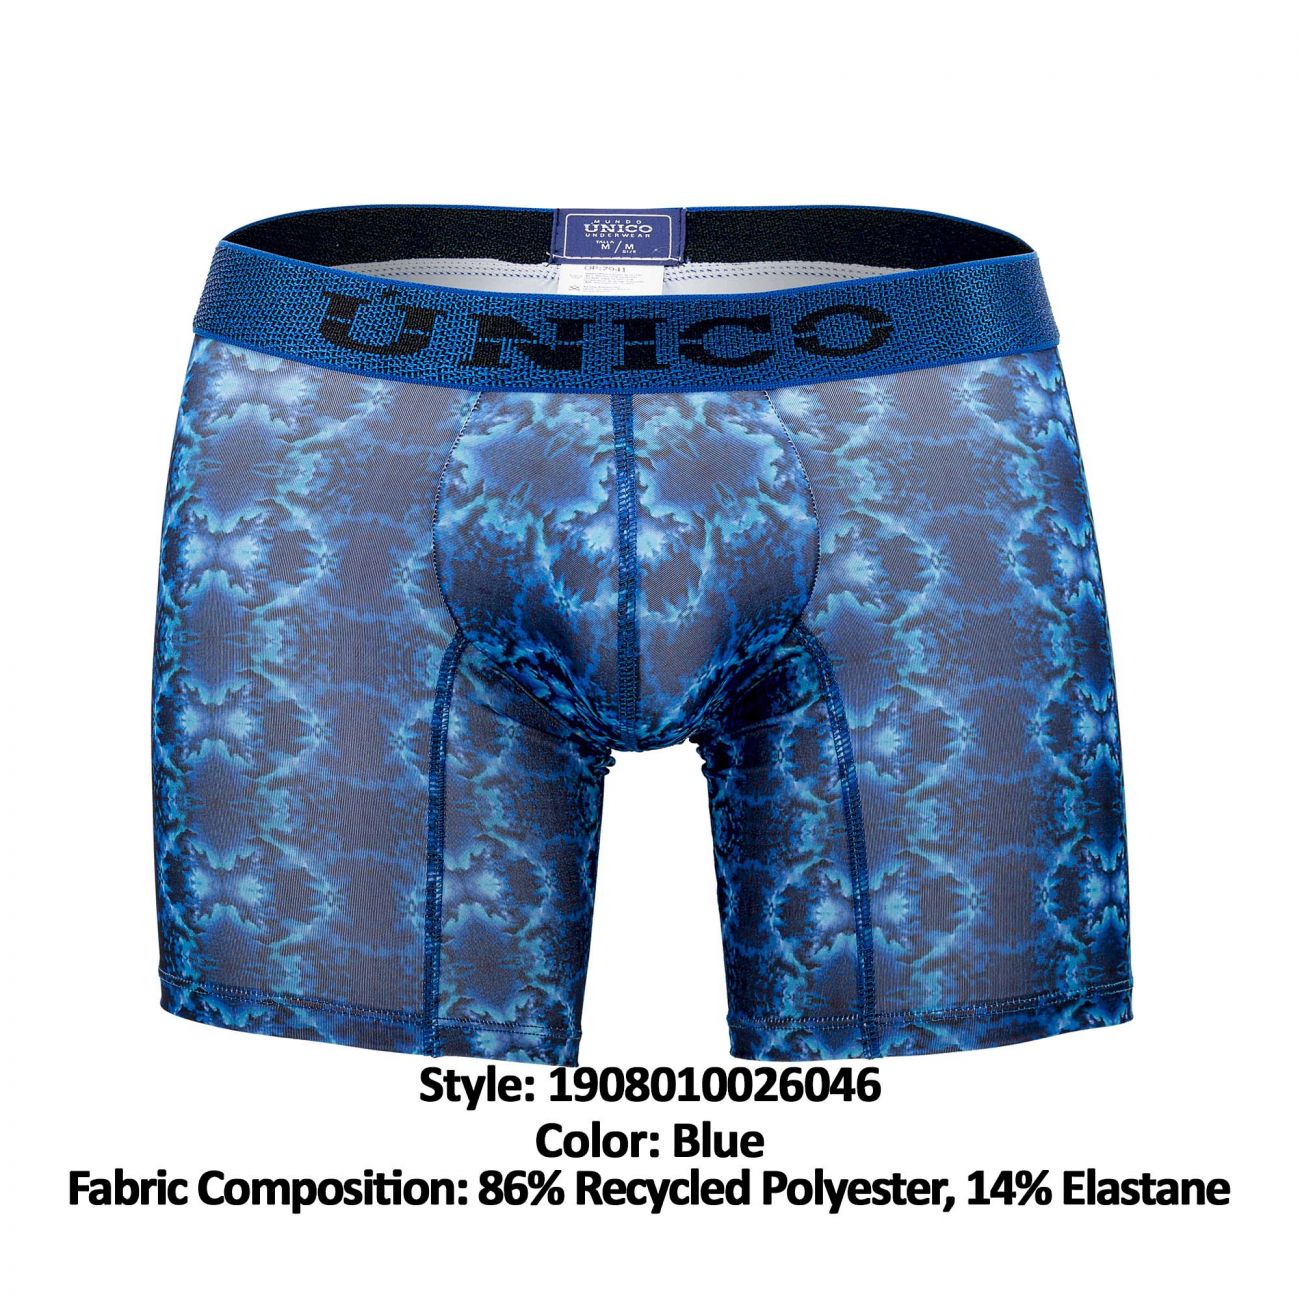 Unico 1908010026046 Boxer Briefs Bruma Color Blue